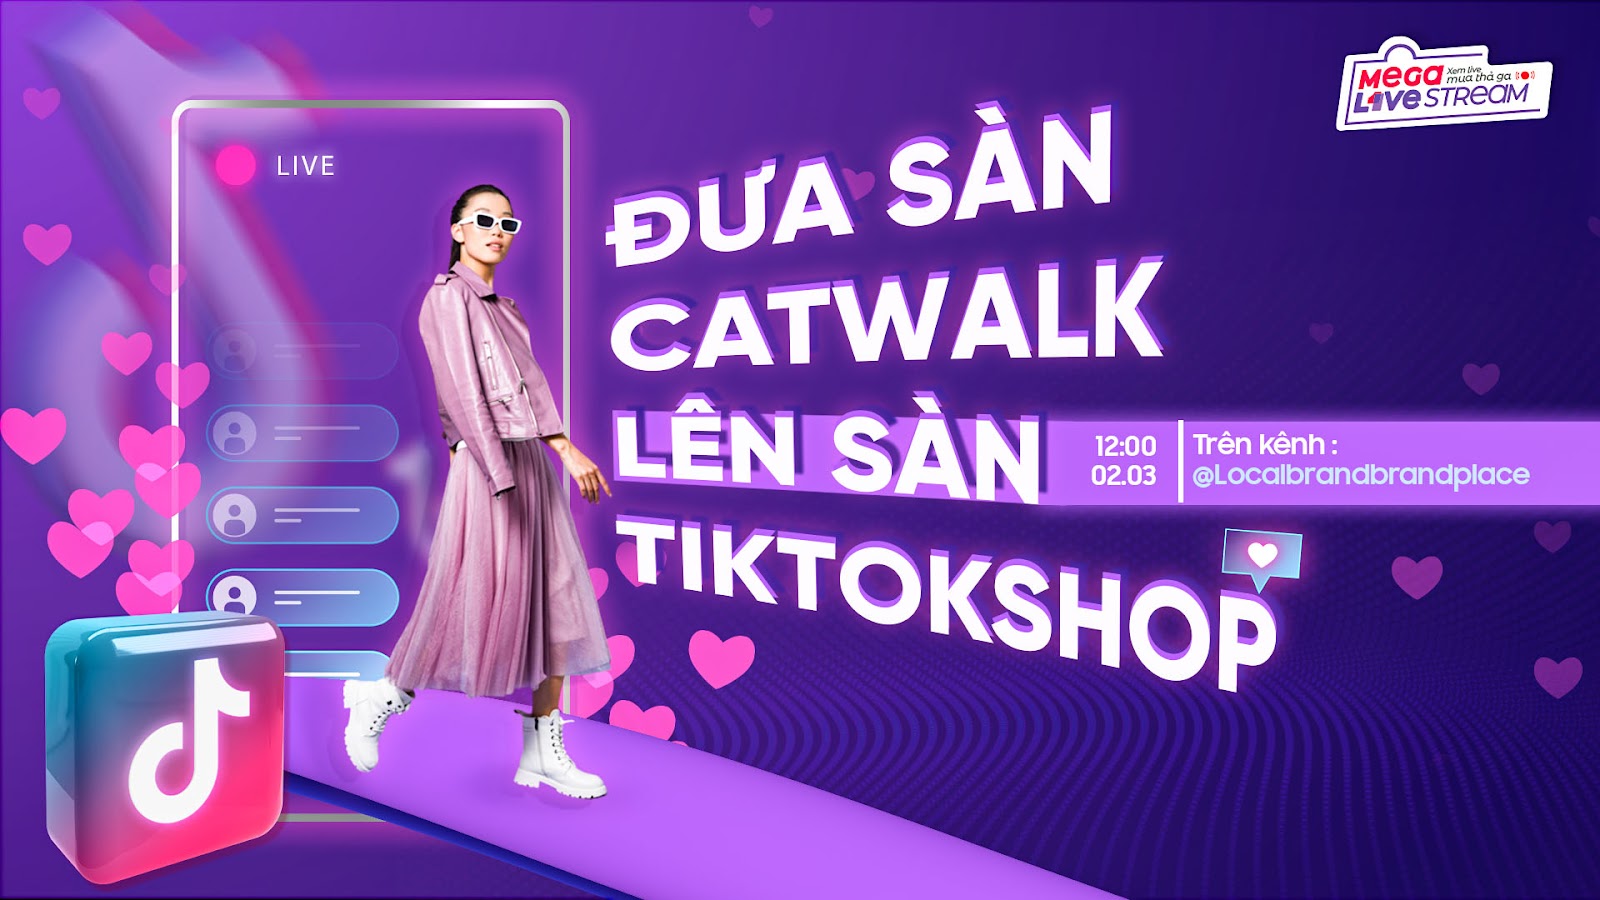 Các tín đồ mua sắm của TikTok Shop Việt Nam sẽ được chiêm ngưỡng sàn diễn thời trang được đầu tư khủng nhằm phục vụ cho show livestream bán hàng đình đám, kéo dài tận 15 tiếng mang tên MEGA LIVESTREAM Xem live mua thả ga trên tài khoản @Localbrandplace